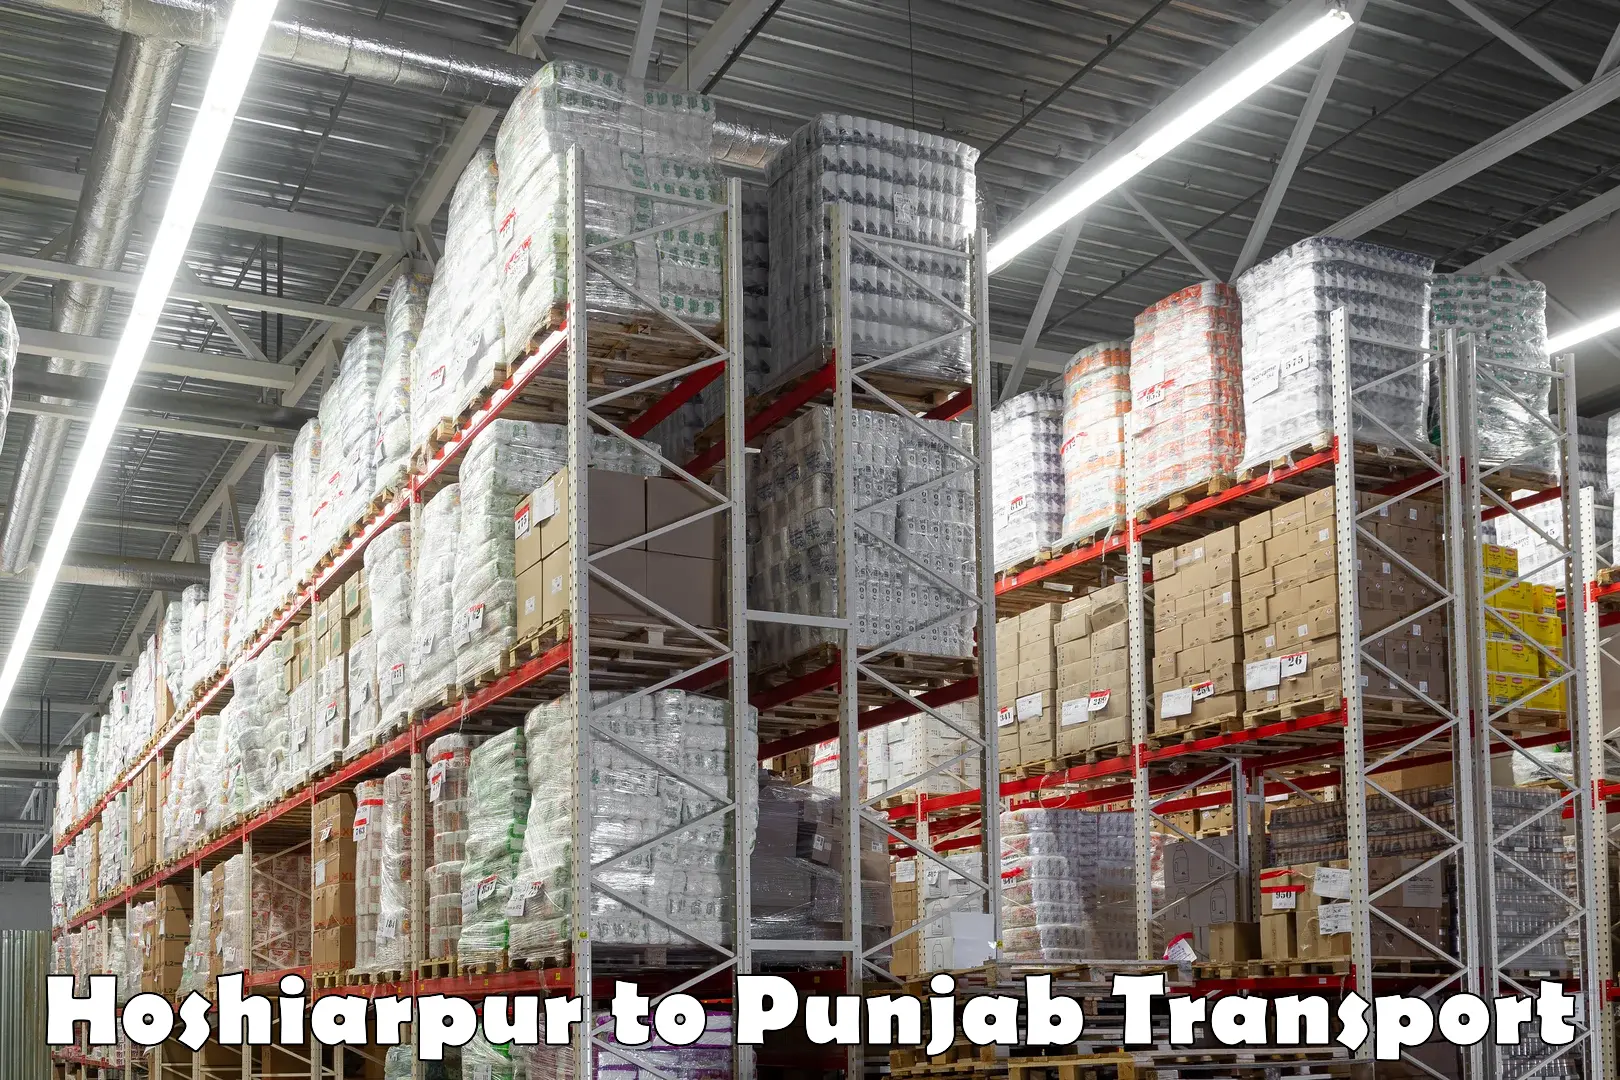 Commercial transport service Hoshiarpur to Punjab